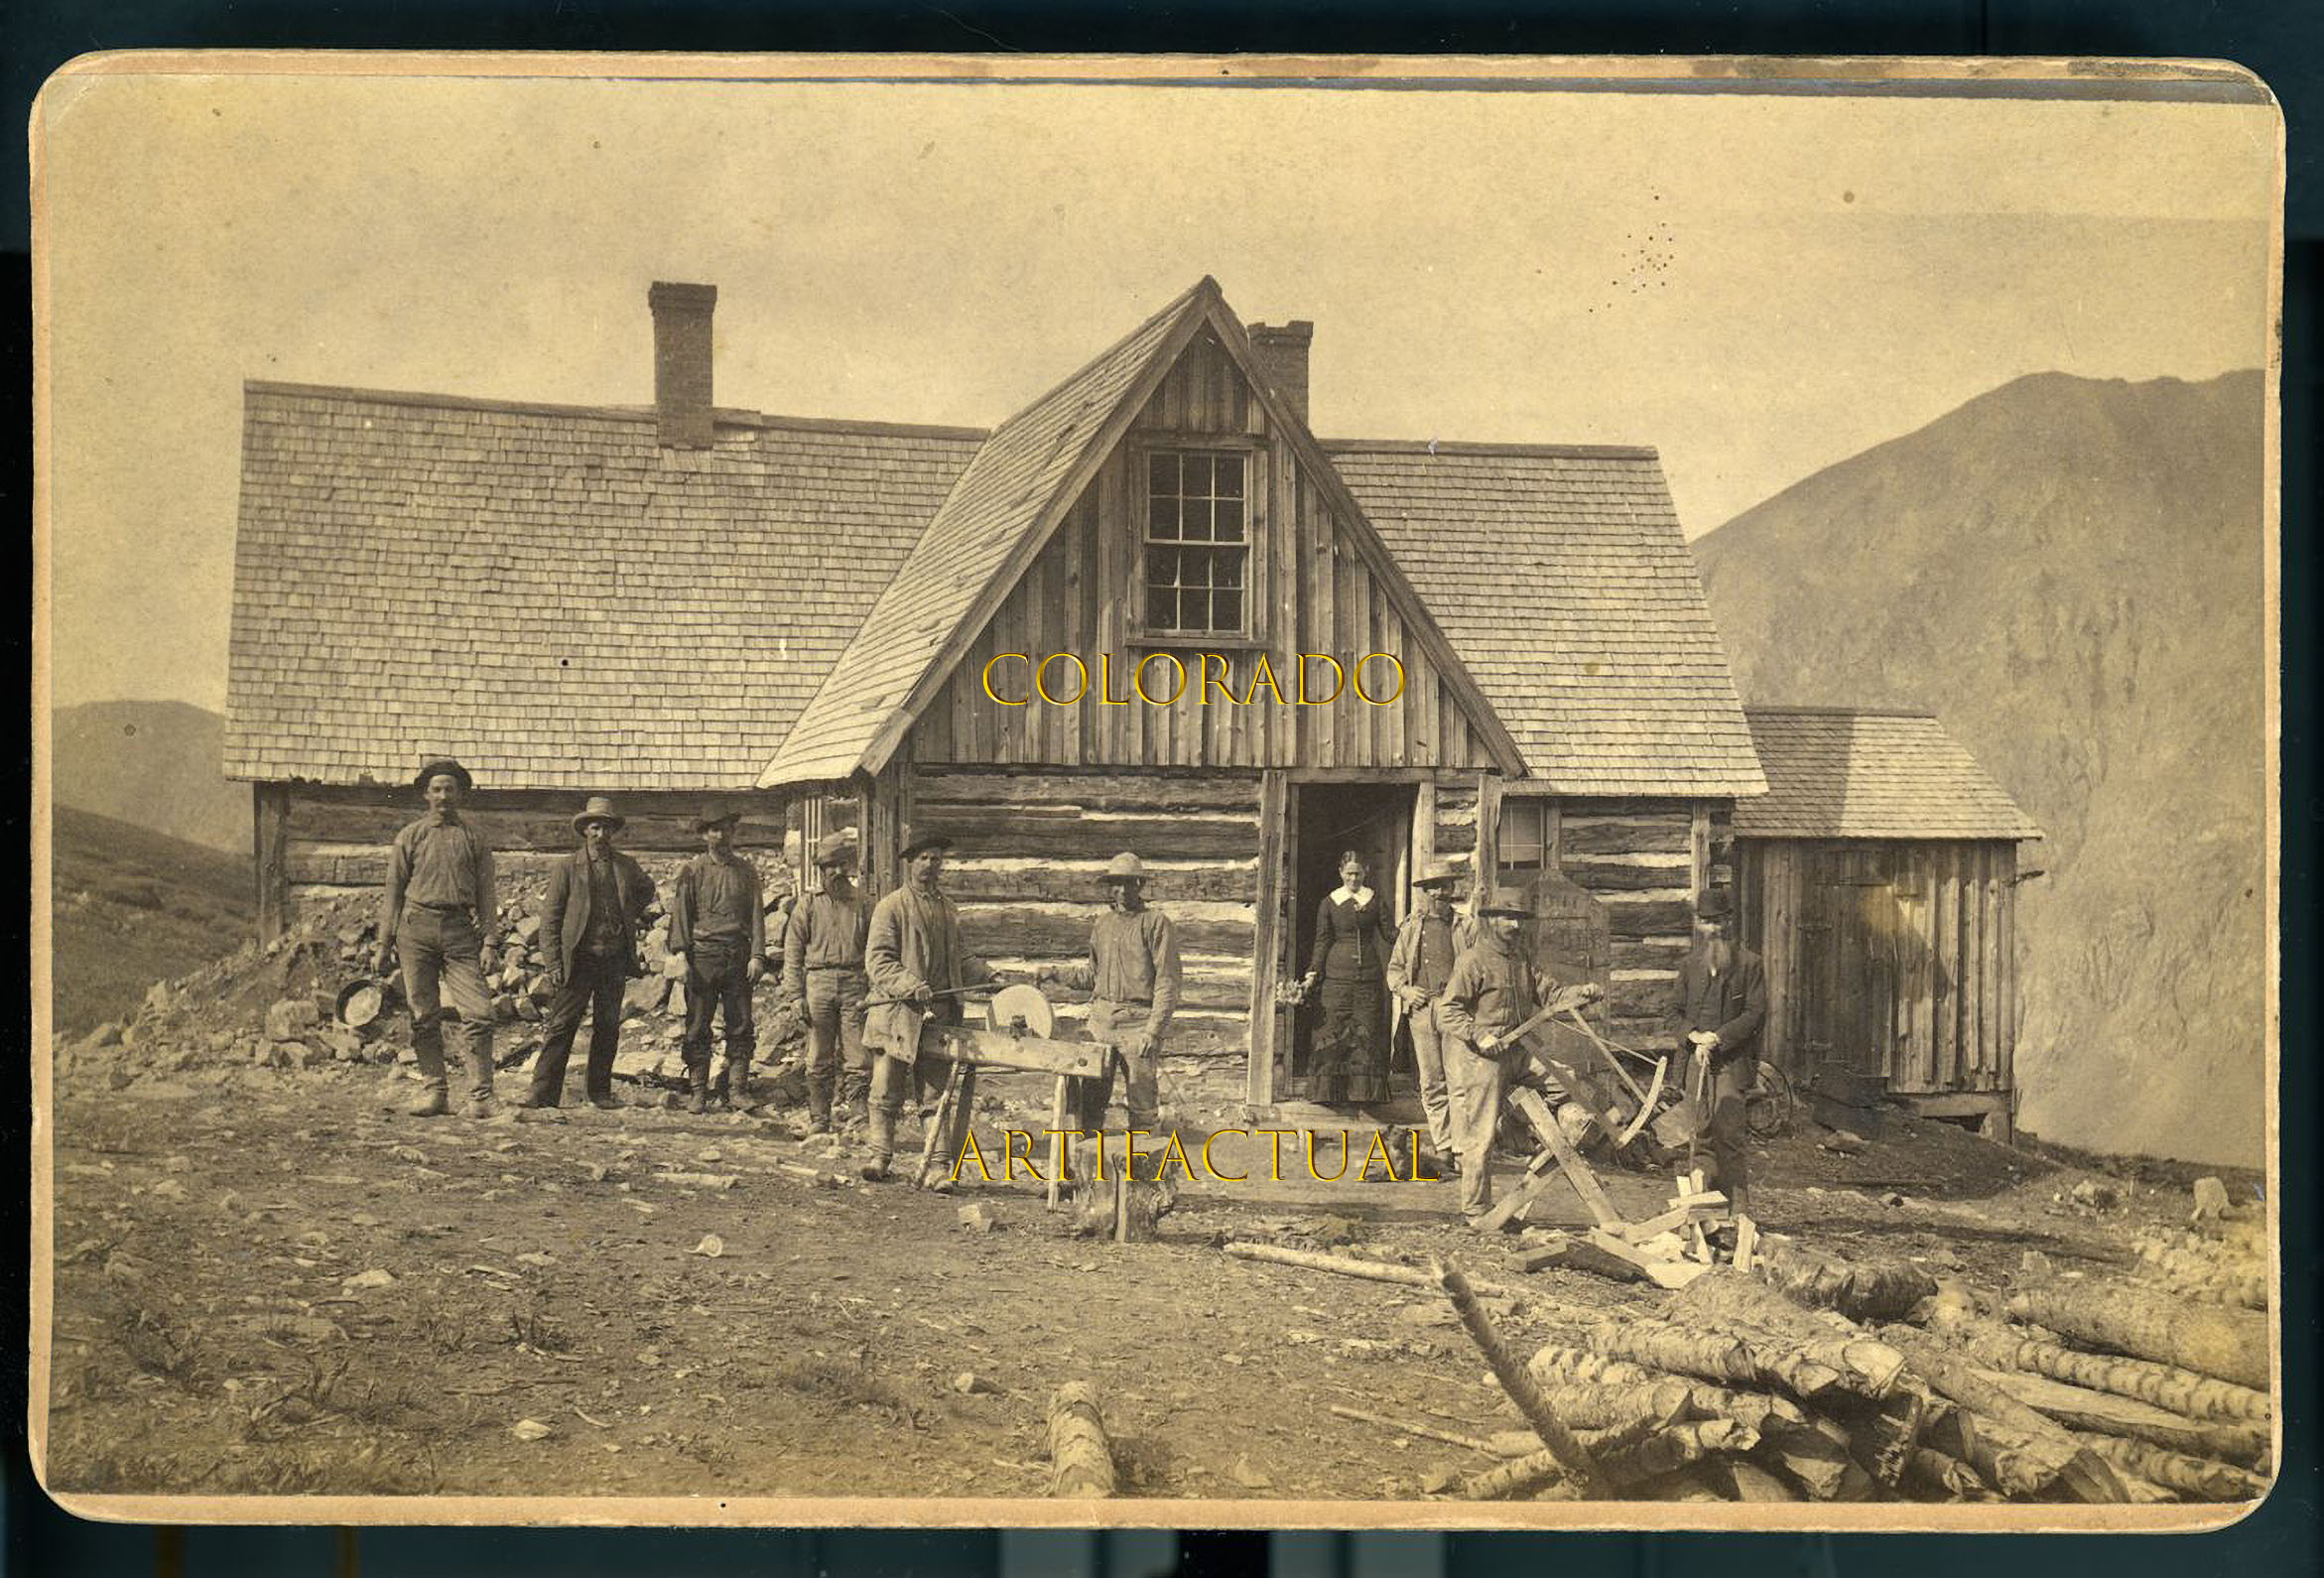 Baker’s cabin near Silverton Colorado photograph 1880